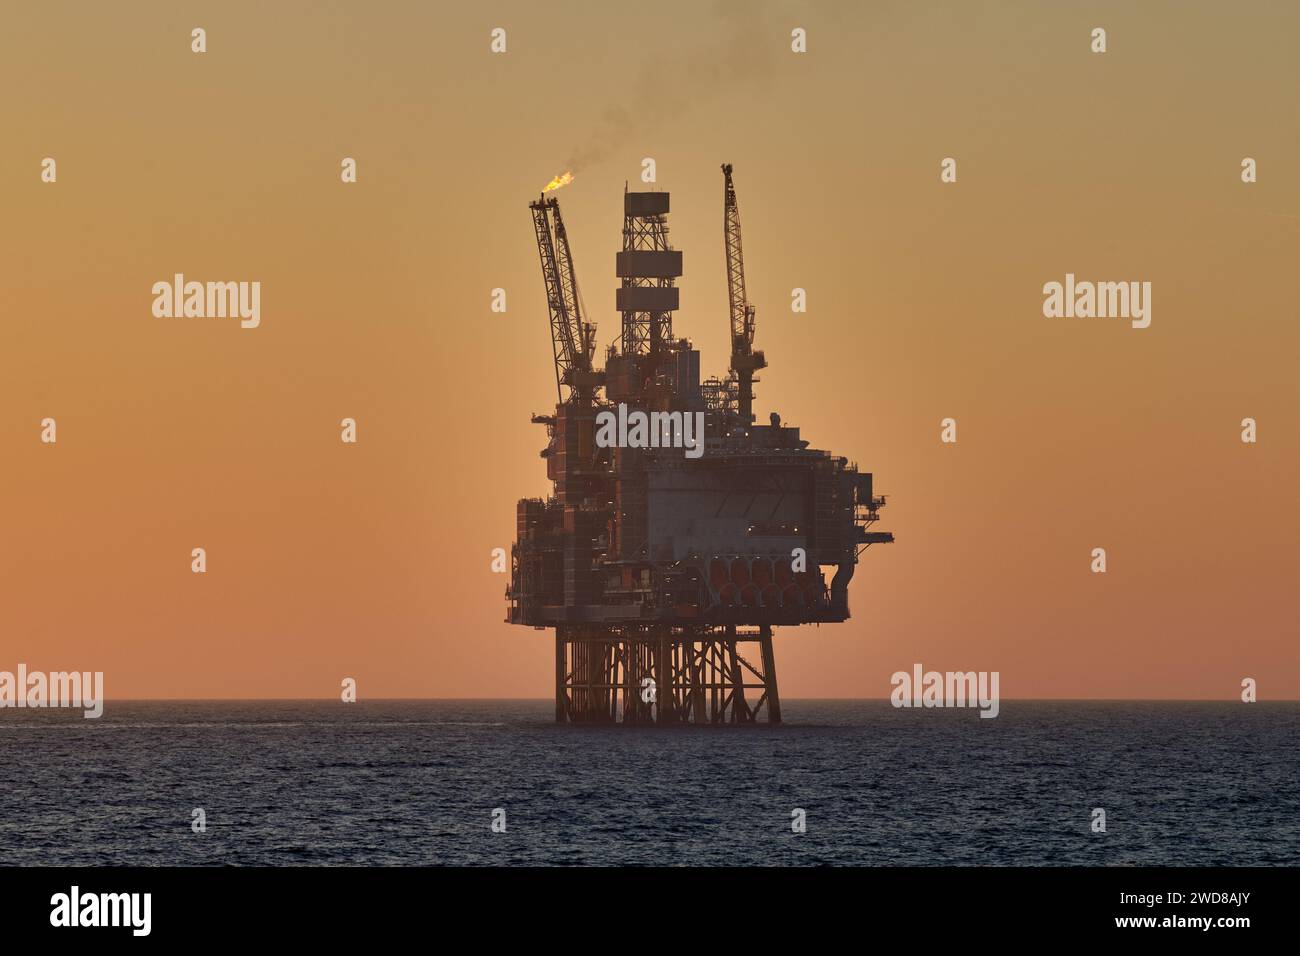 Silhouette de plate-forme offshore de jackup de pétrole et de gaz dans l'océan pendant le coucher du soleil, avec le ciel jaune et l'eau calme. Banque D'Images